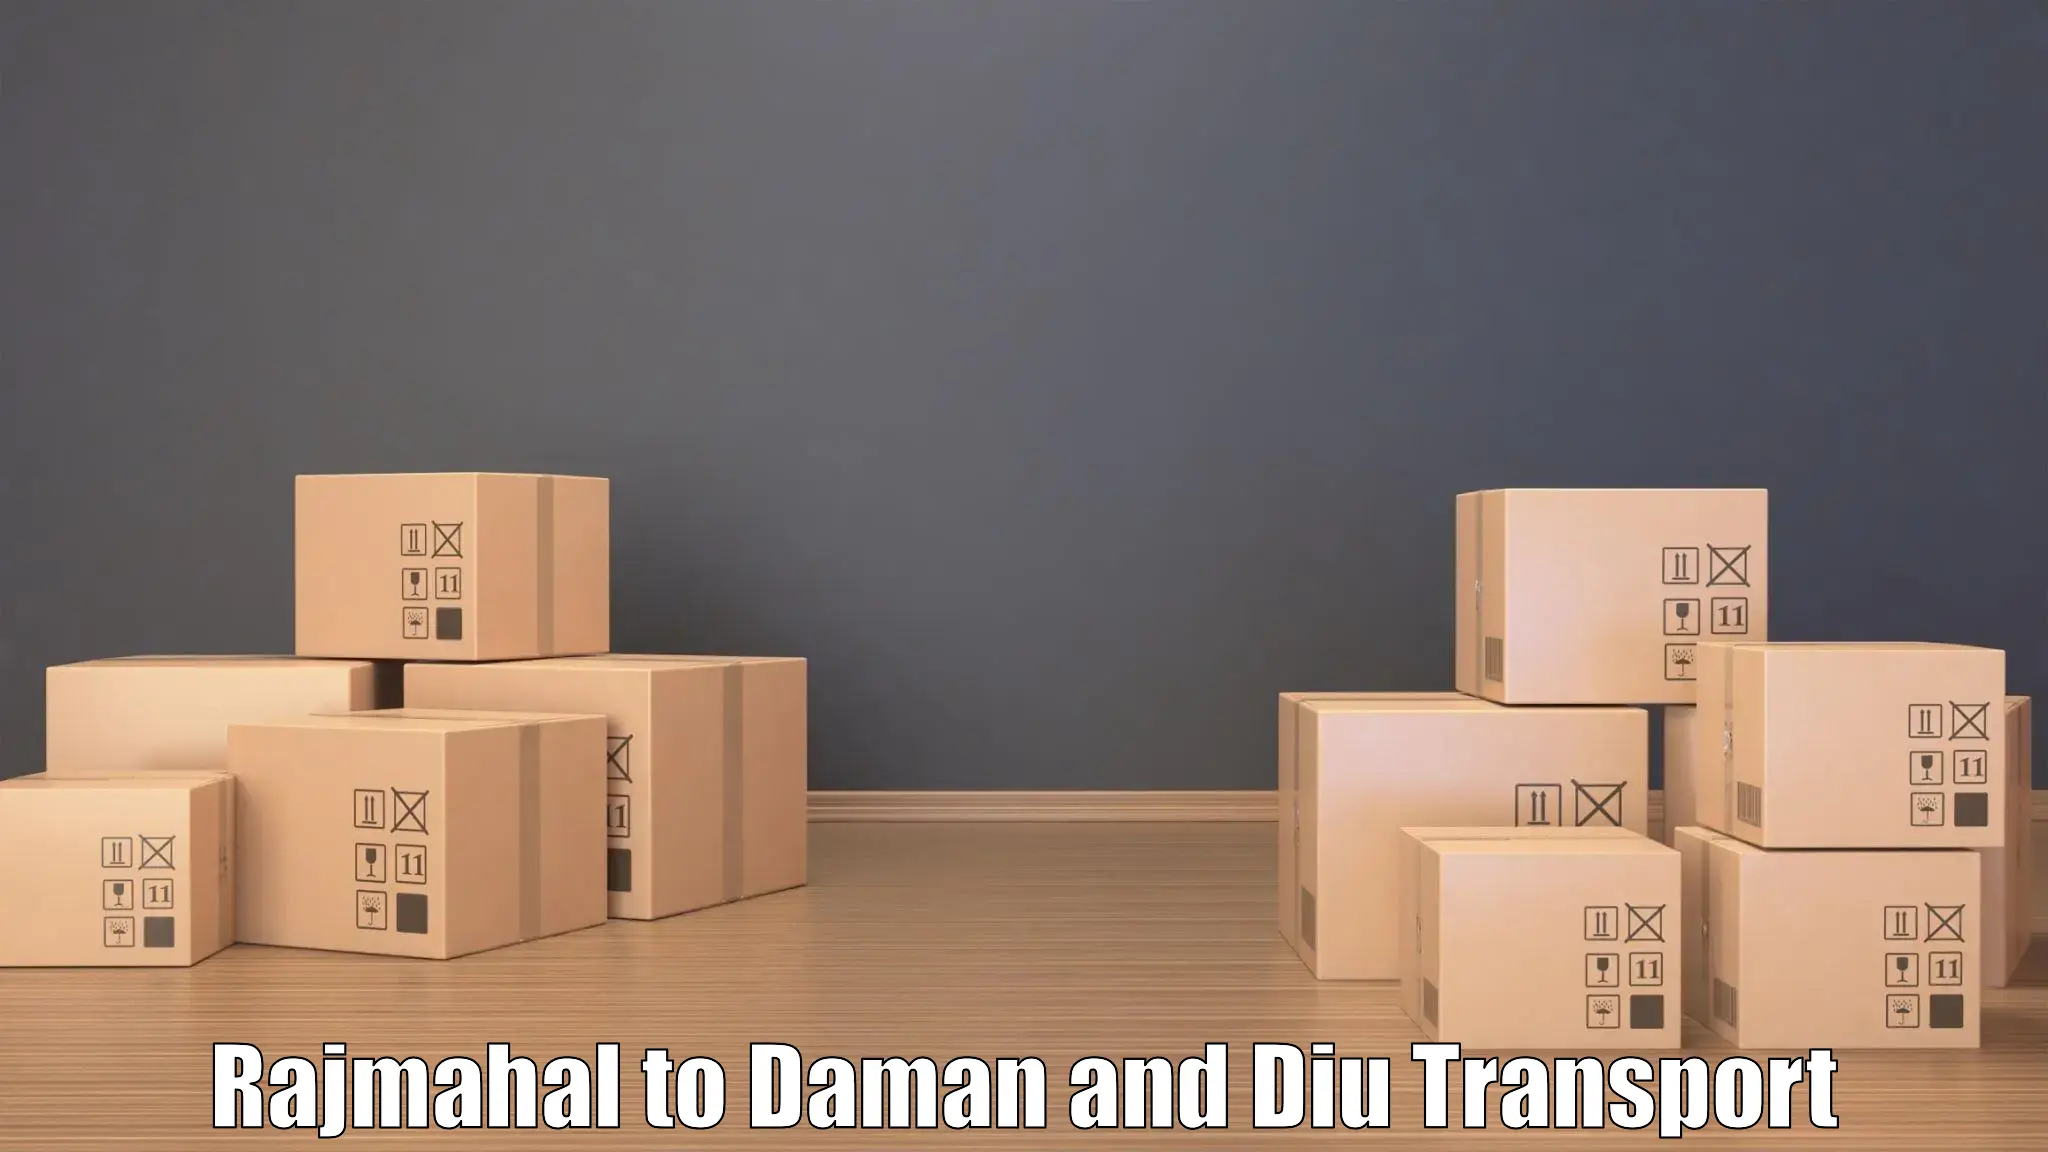 Cargo train transport services Rajmahal to Daman and Diu